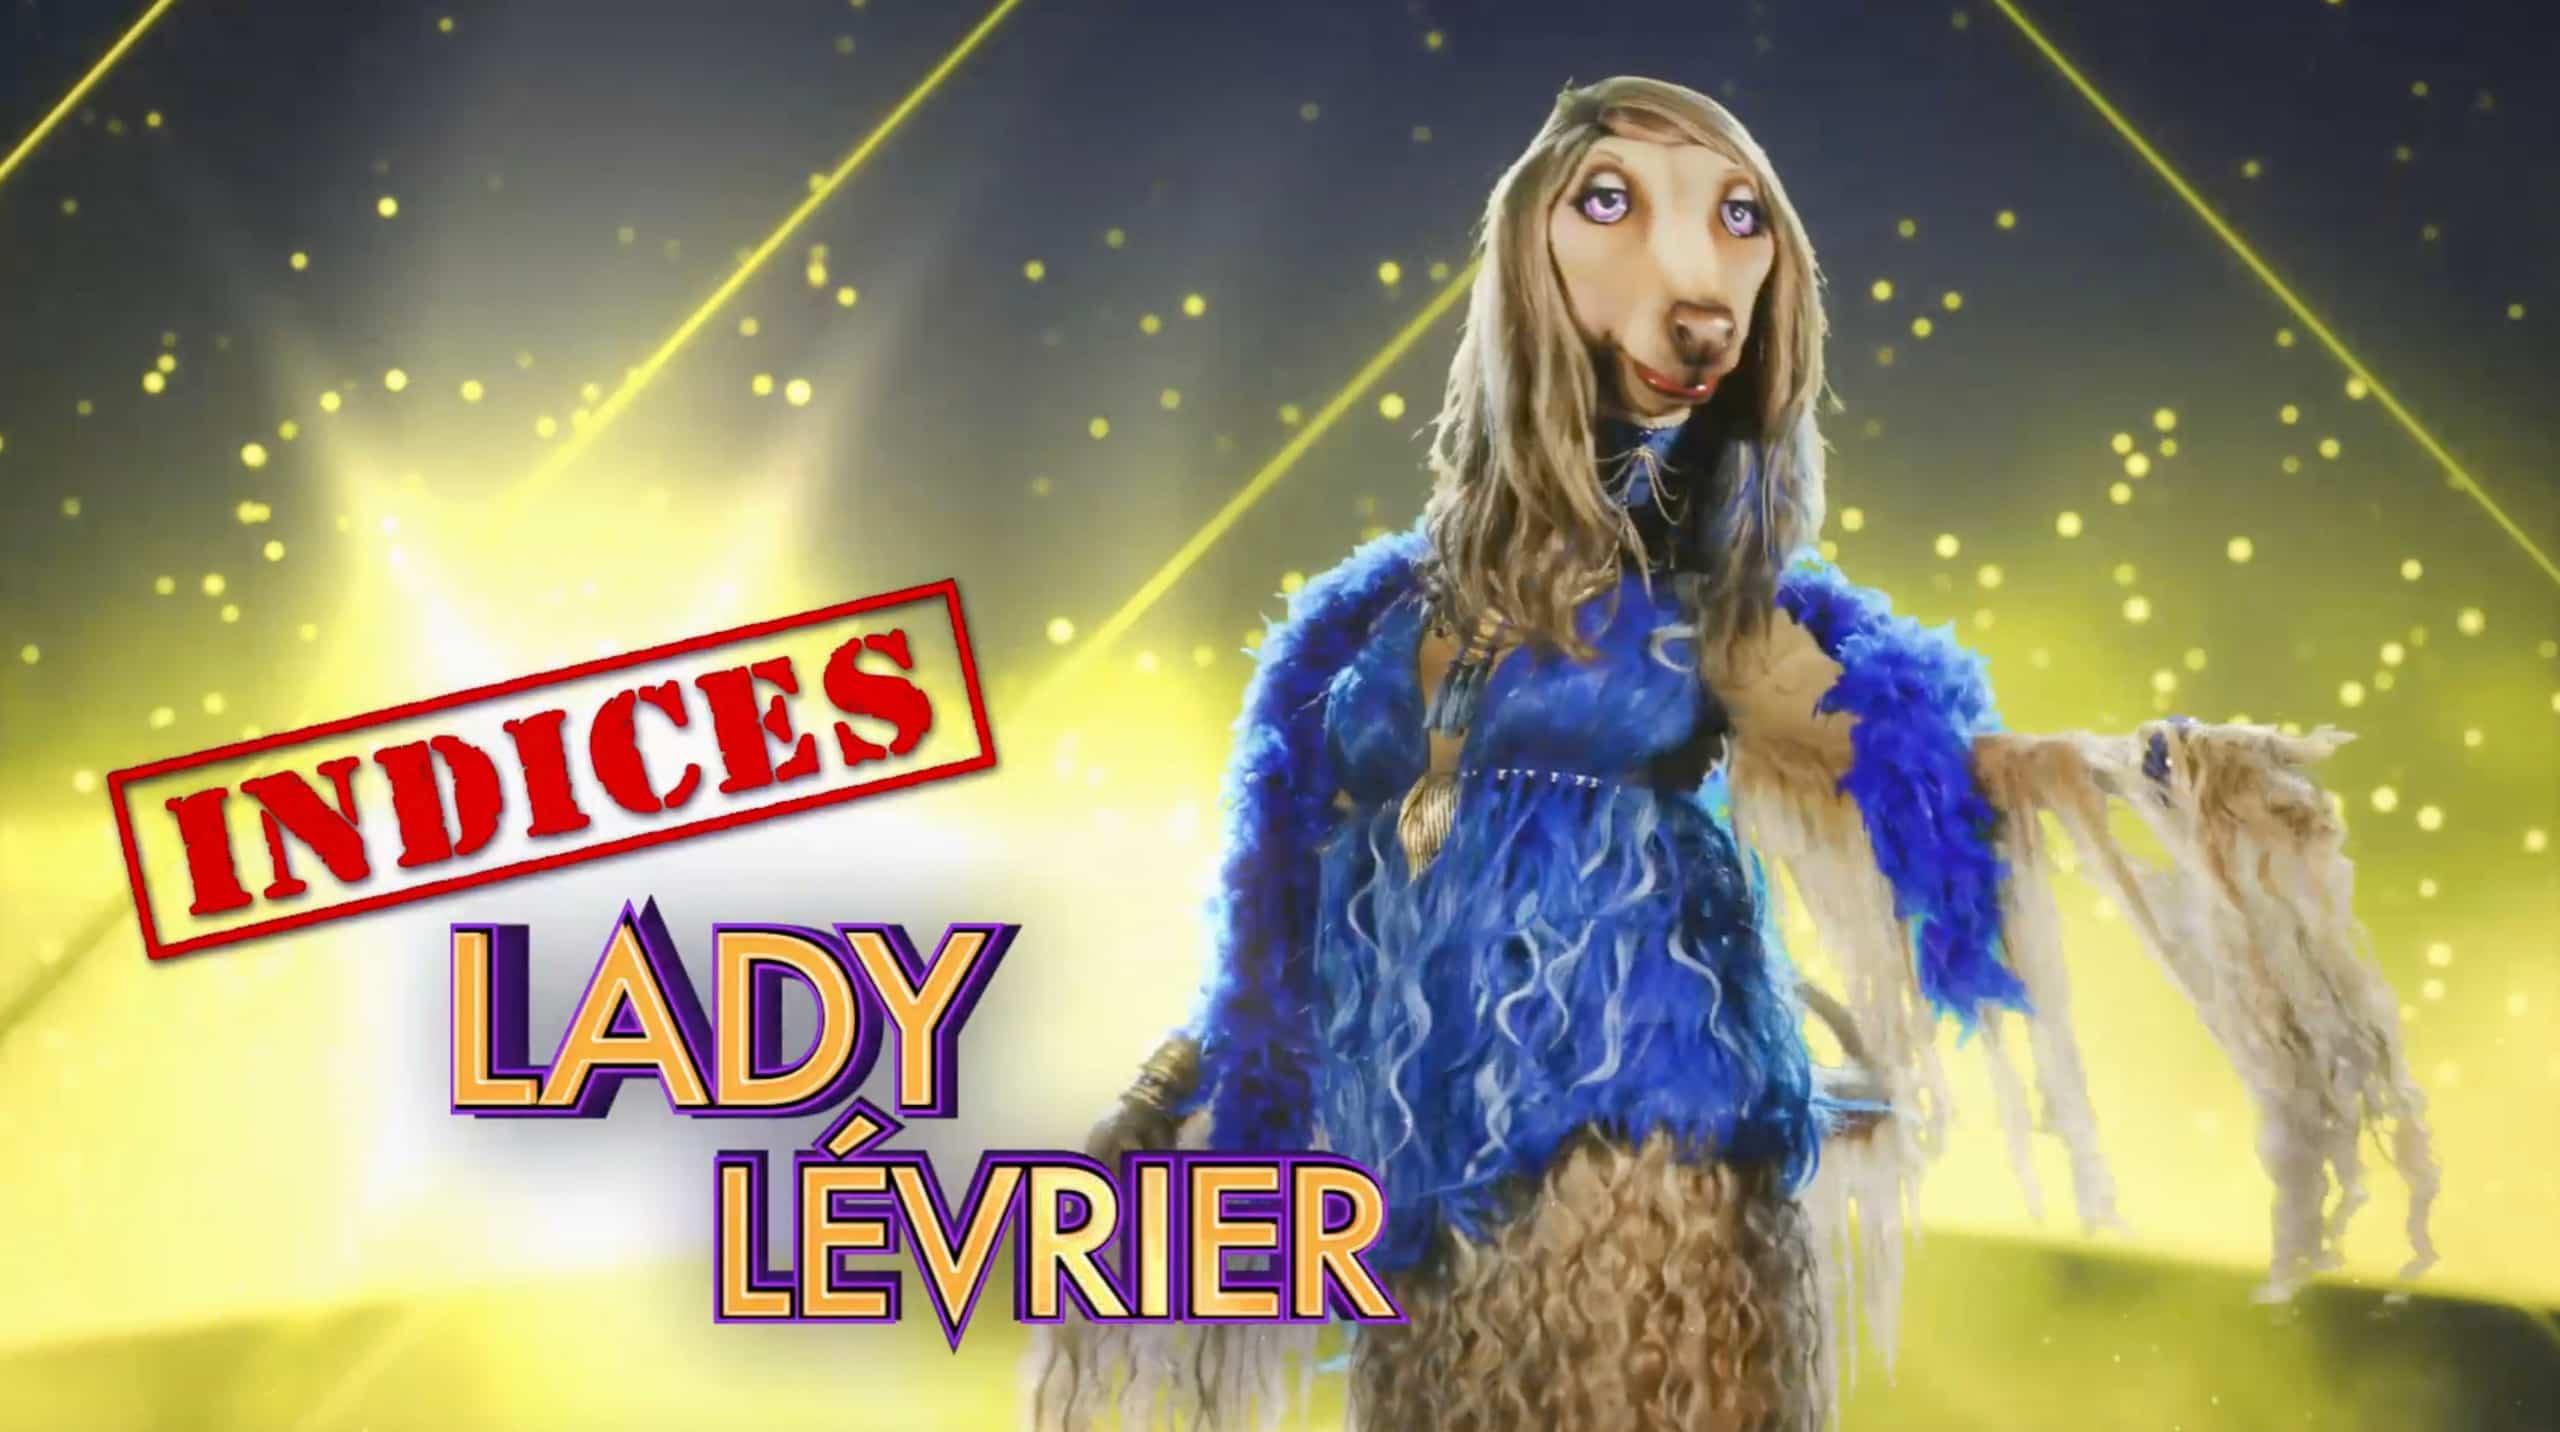 Lady Lévrier - Indices 3